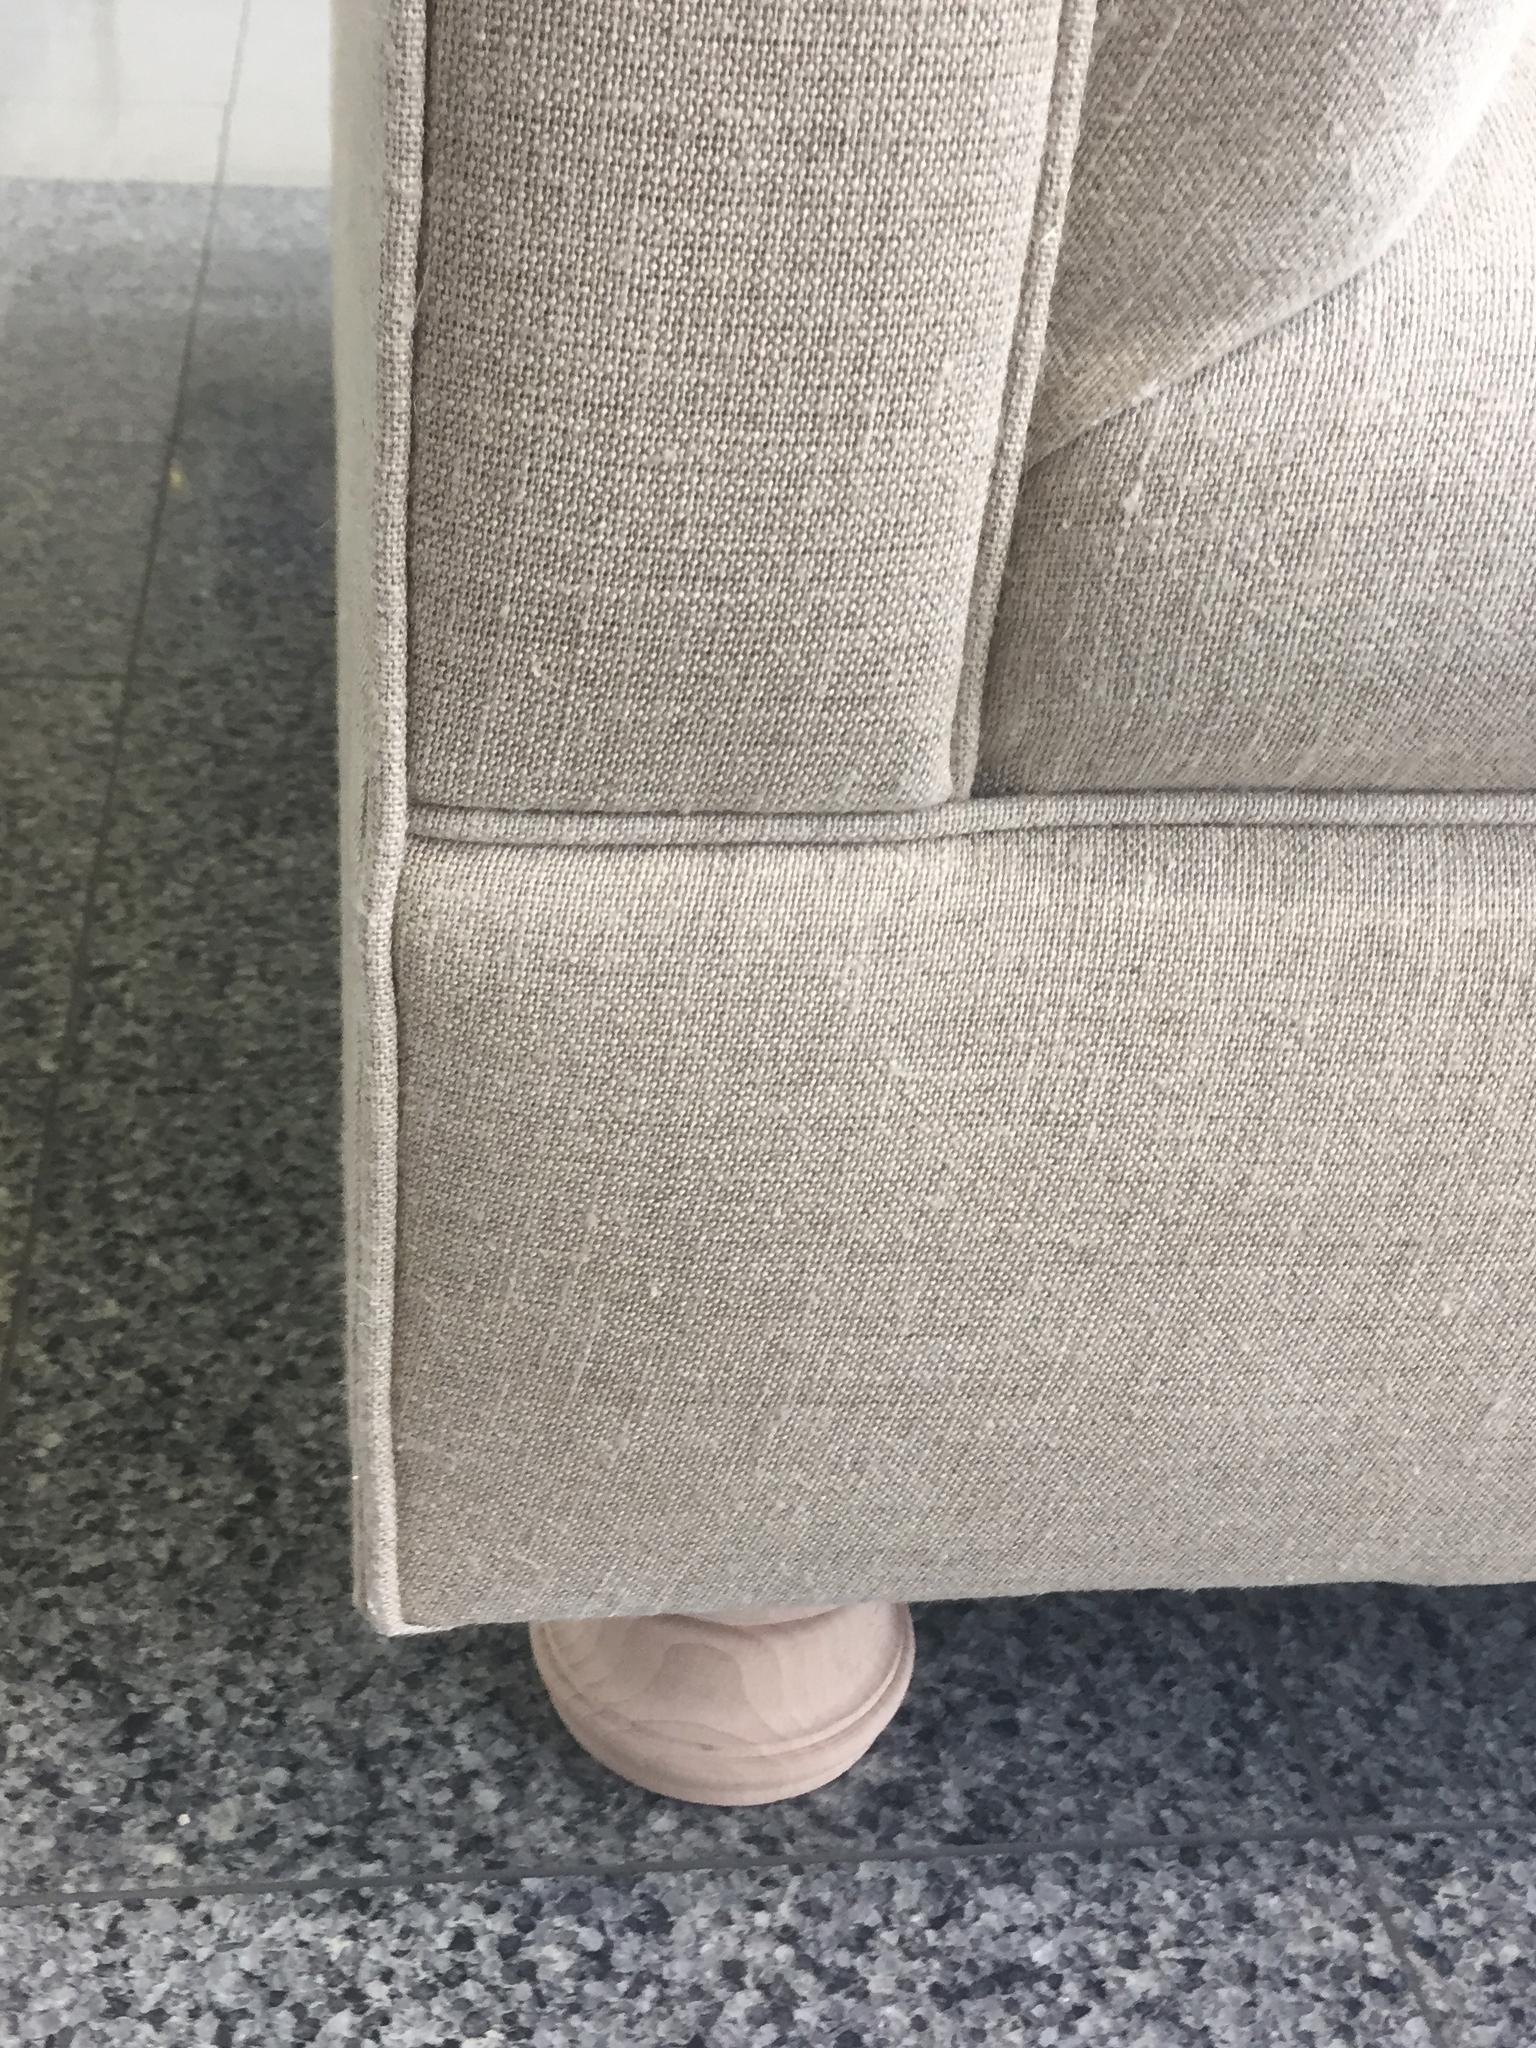 Axel Vervoordt Custom Sofa in Belgian Linen 3